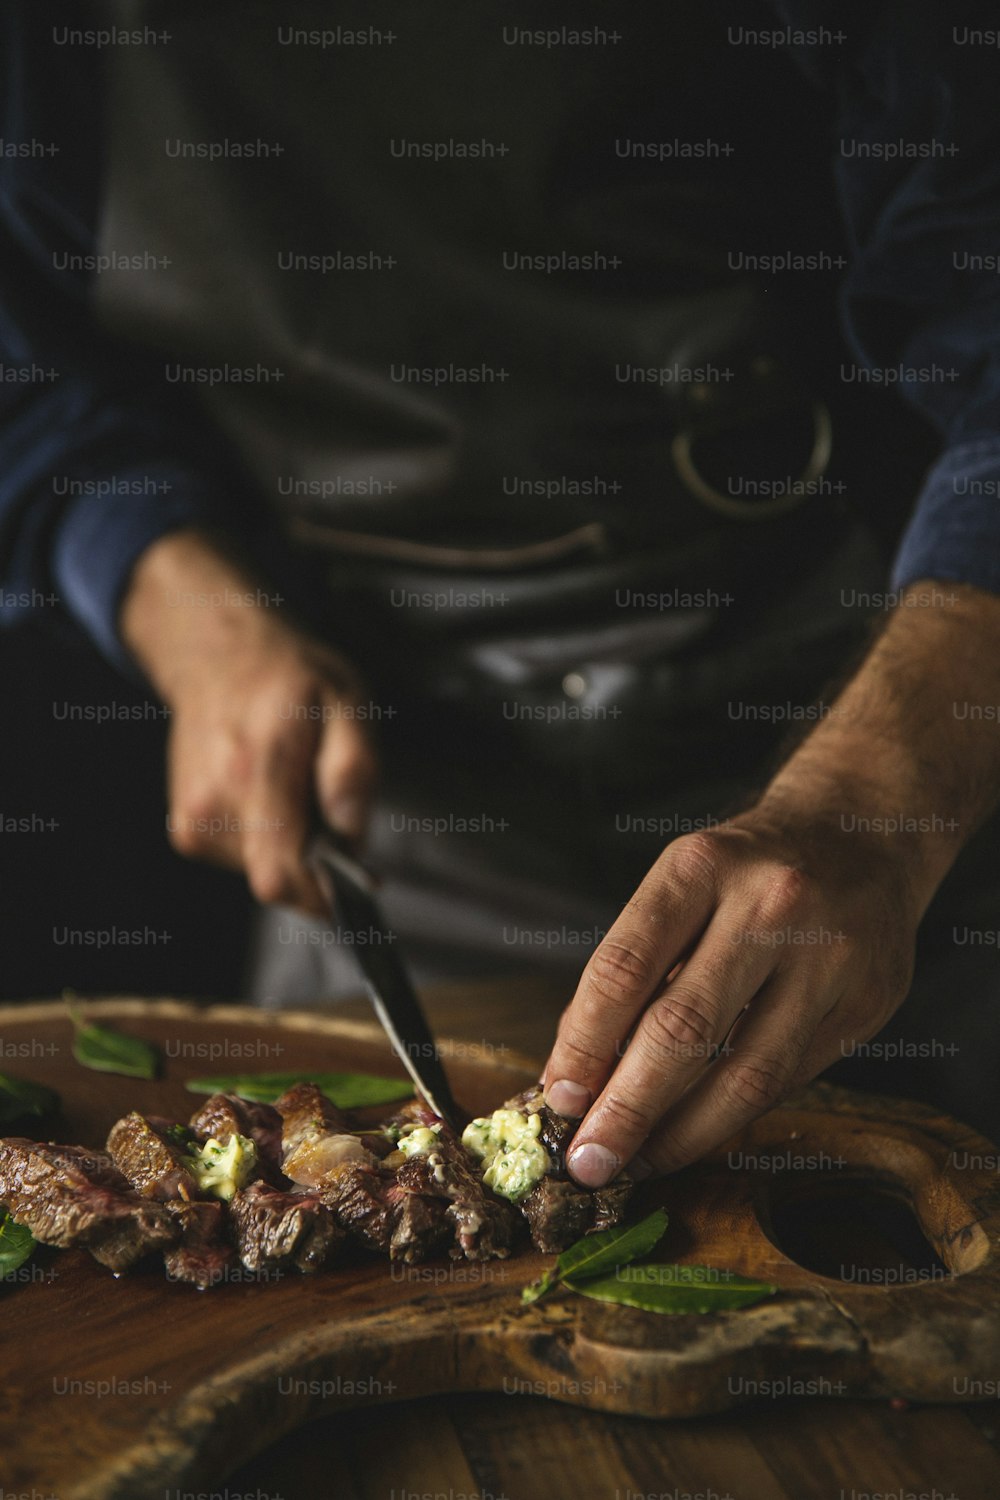 Una persona cortando comida encima de una tabla de cortar de madera